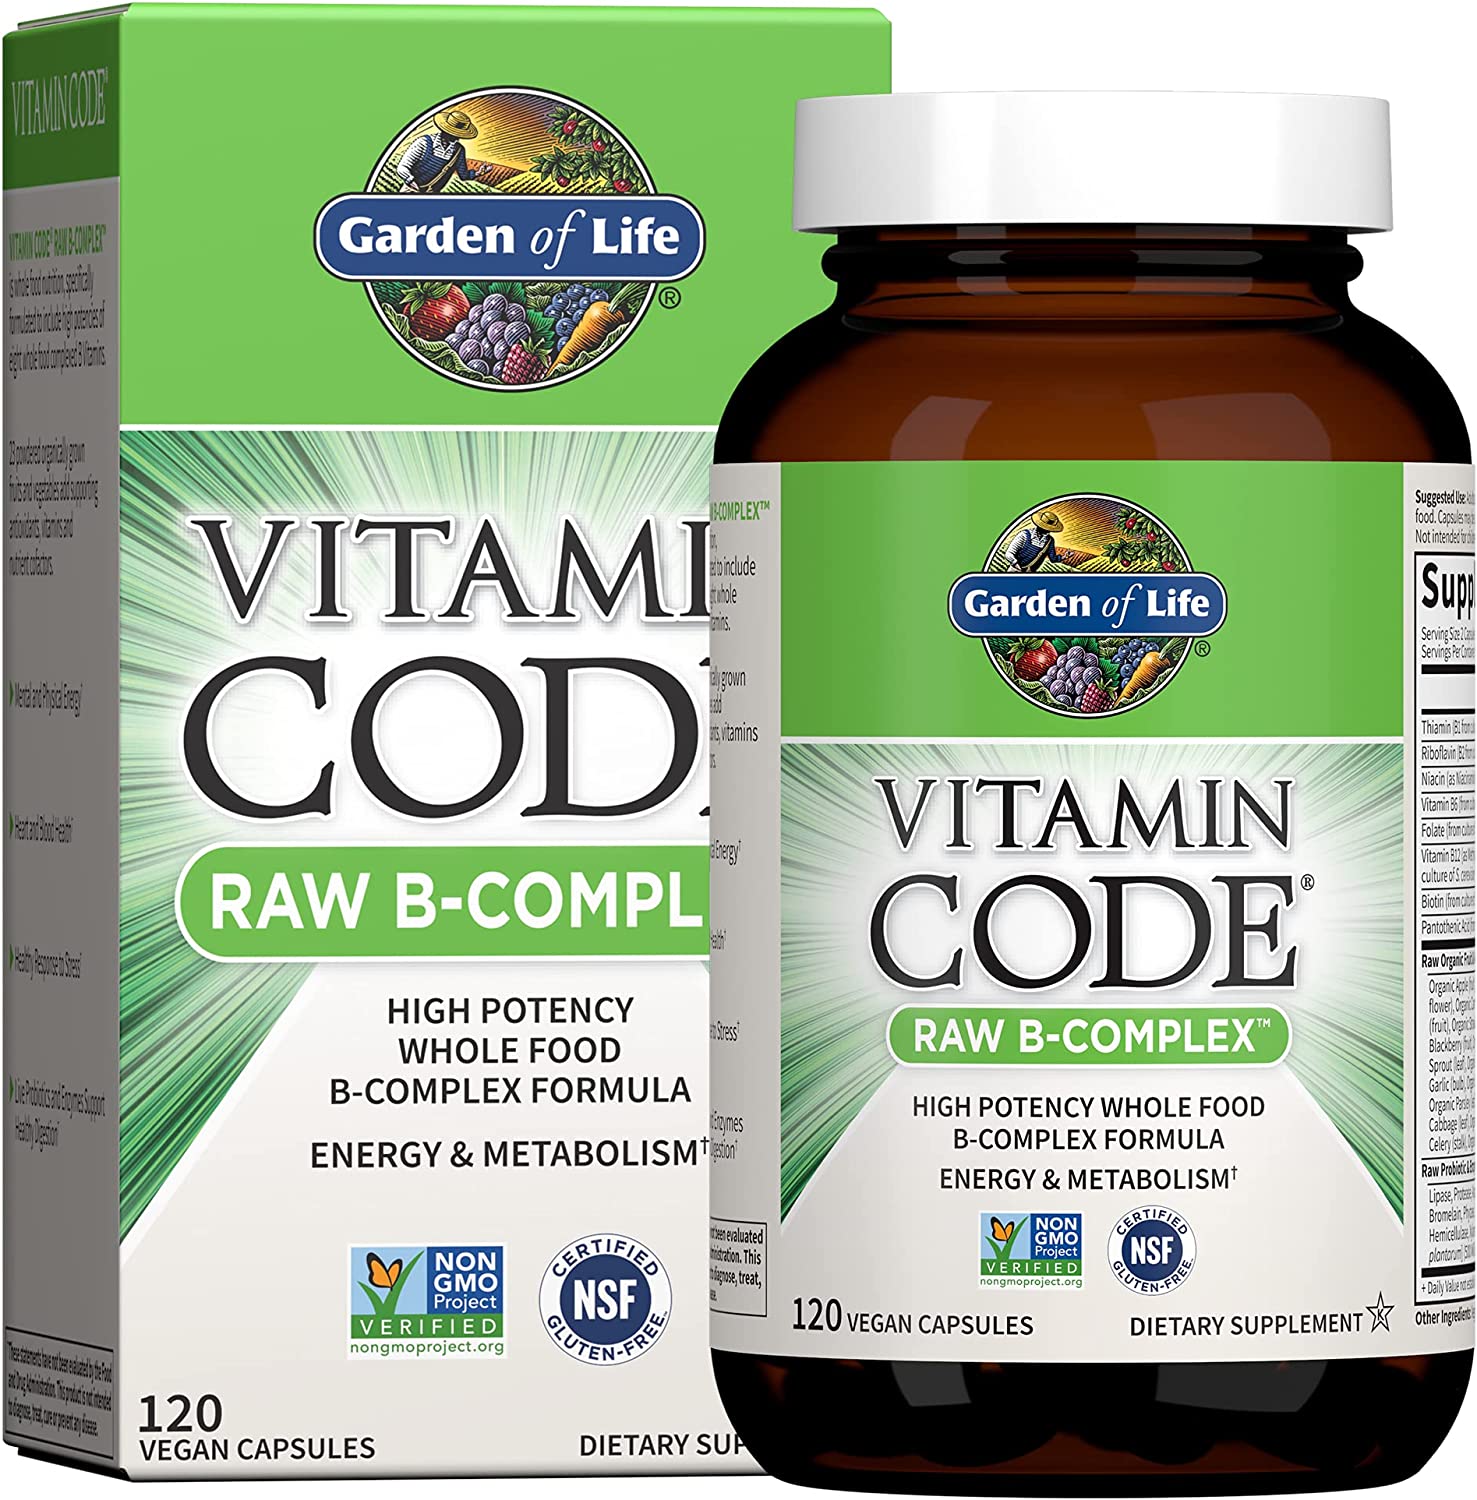 HŨ 120 VIÊN HỖN HỢP VITAMIN B Raw Complex ( B1, B2,B3,B6 ) Garden of Life - Vitamin Code, Non GMO - Gluten Free, Vegan Capsules